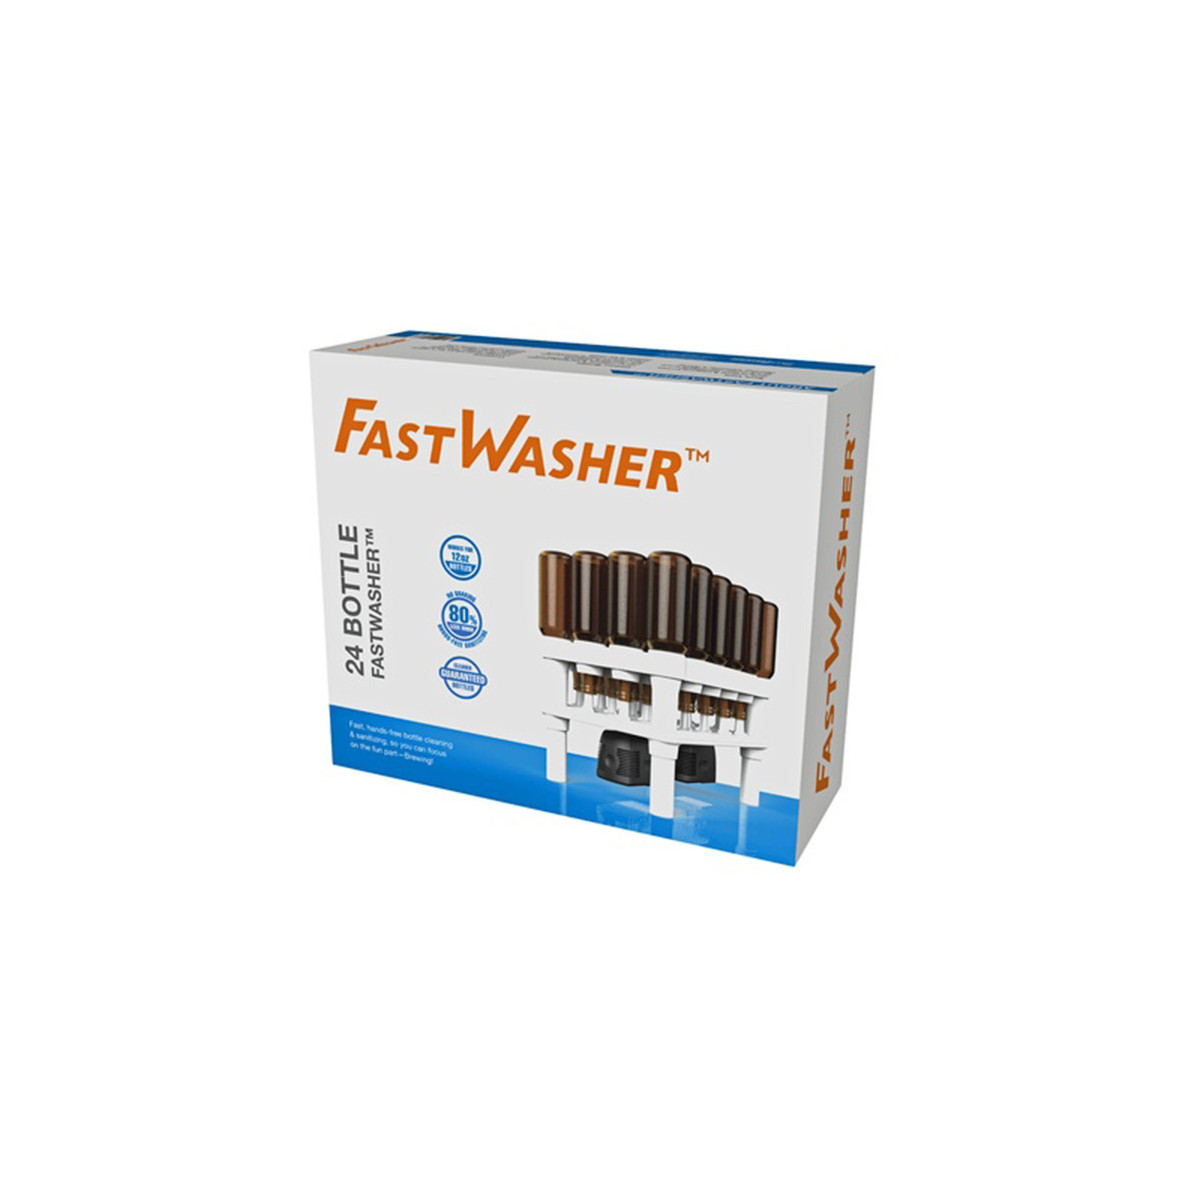 FastWasher 24 washing system for 24 bottles